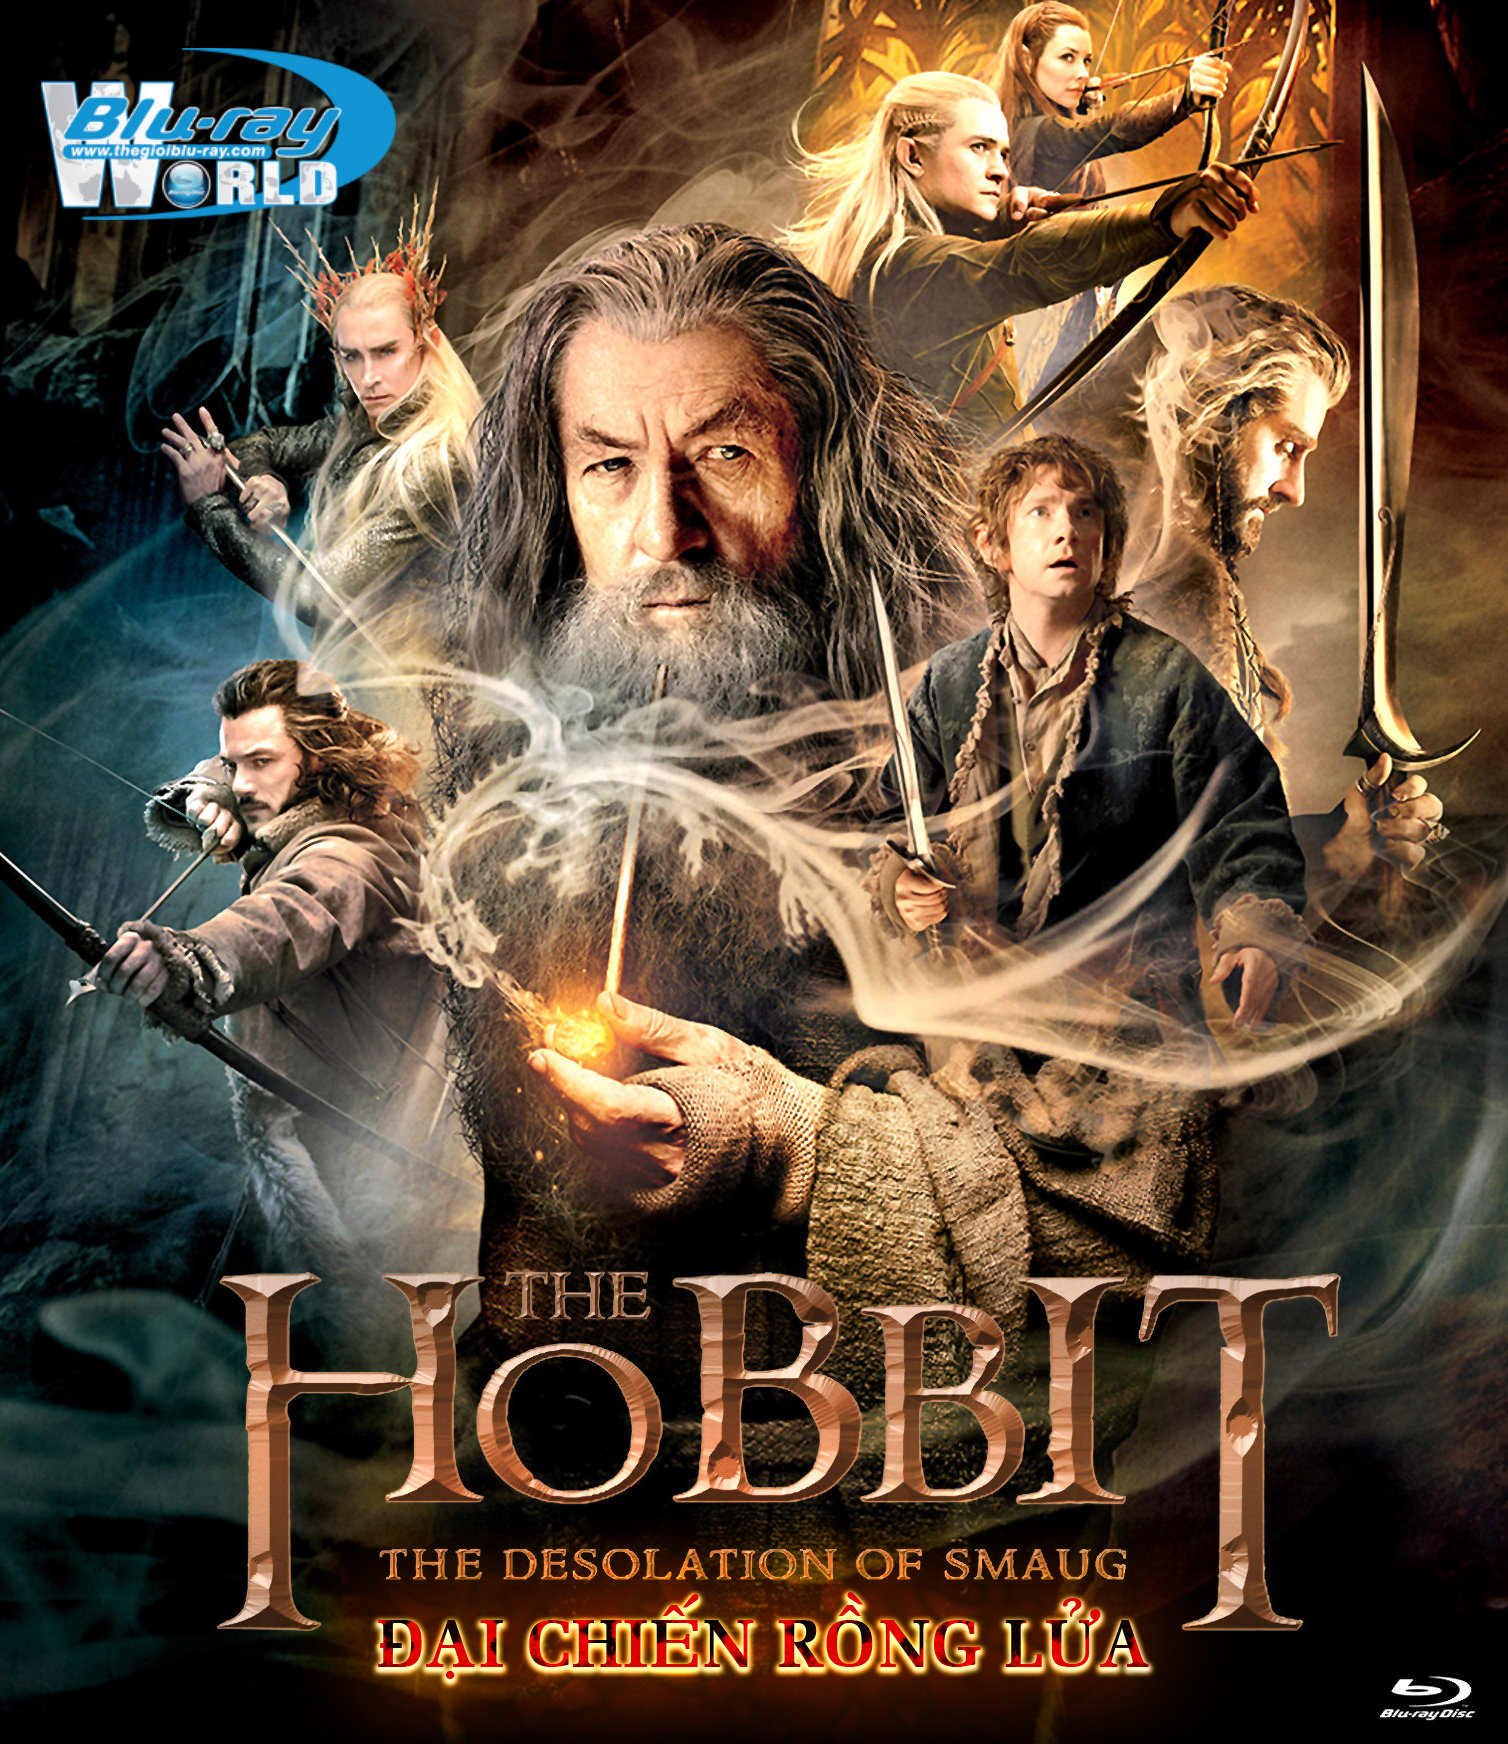 B1673. The Hobbit The Desolation of Smaug 2013 - HOBBIT 2 ĐẠI CHIẾN RỒNG LỬA 2D 25G (DTS-HD MA 7.1)